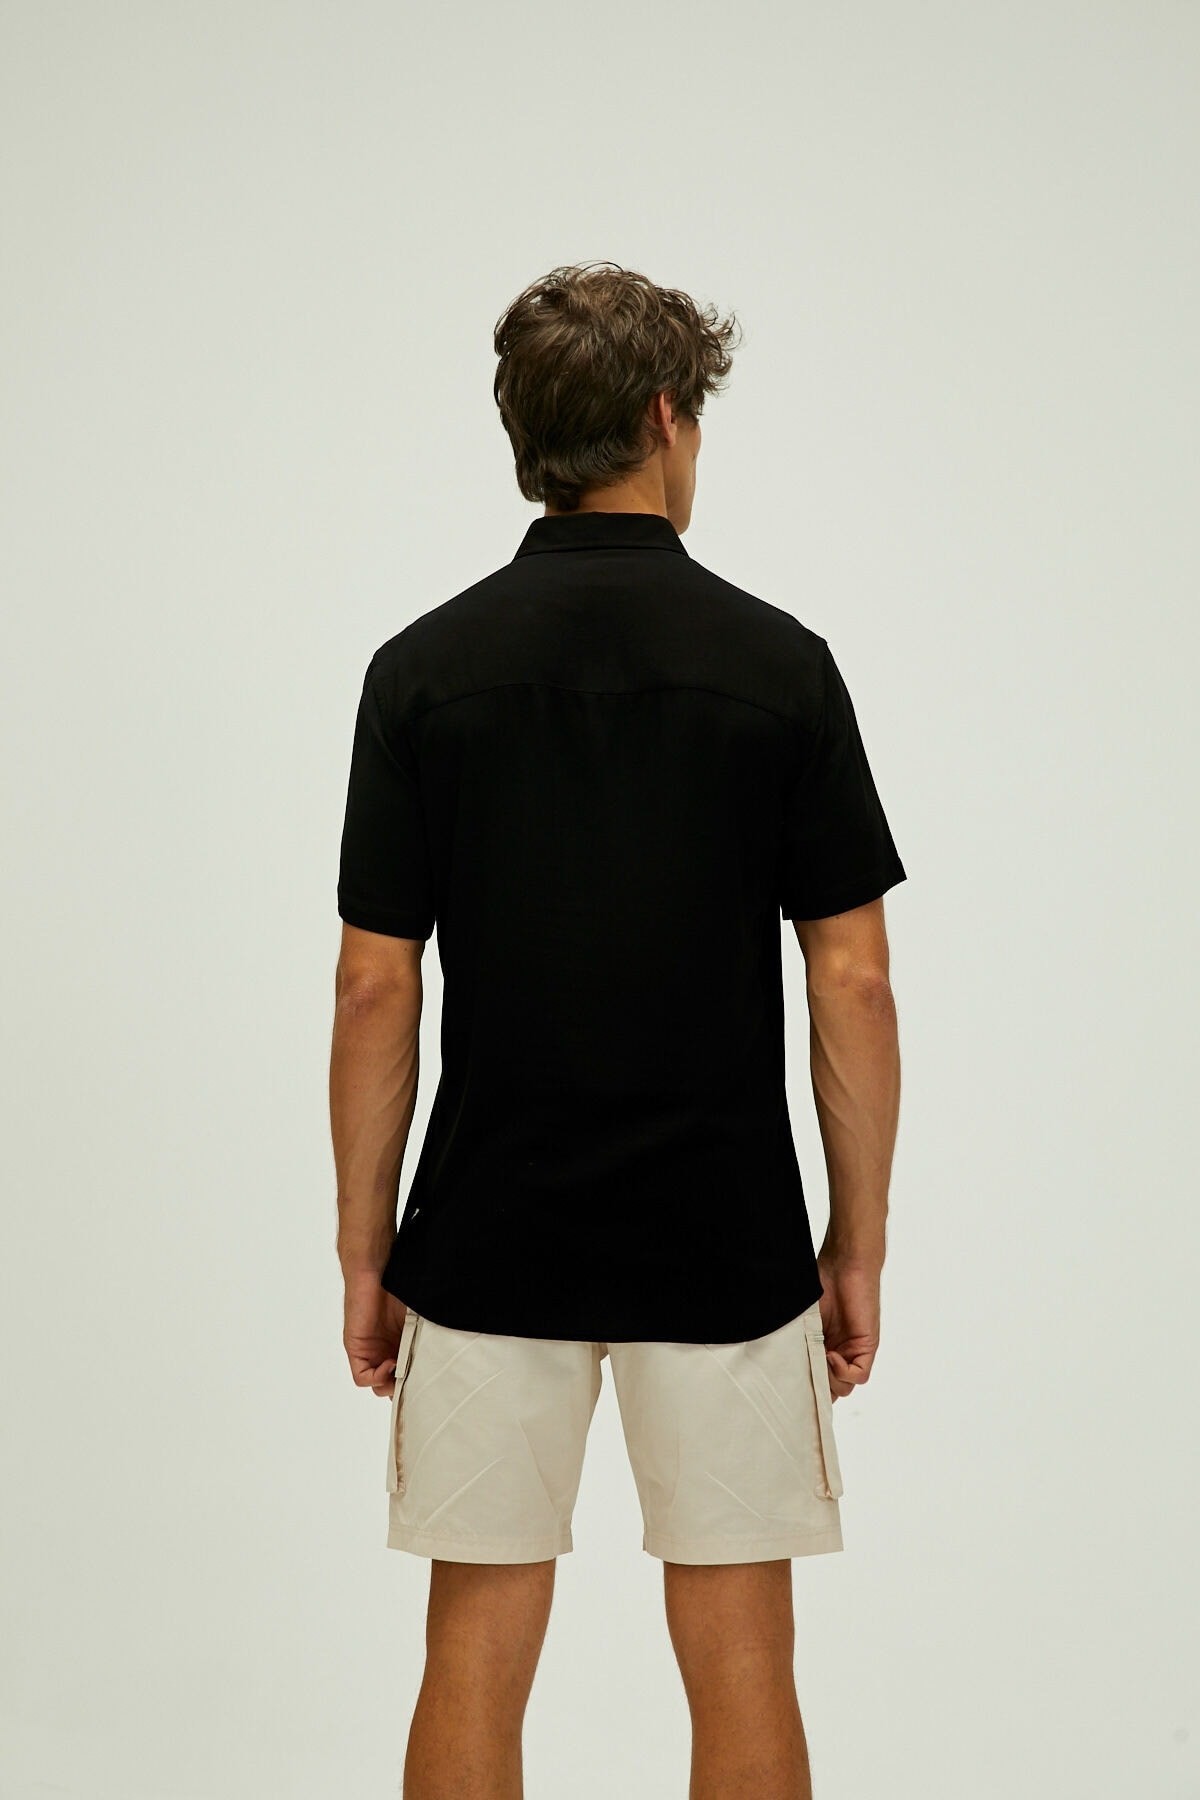 Bad Bear Frank Shirt Siyah Kısa Kollu Erkek Gömlek 22.01.30.001-c01